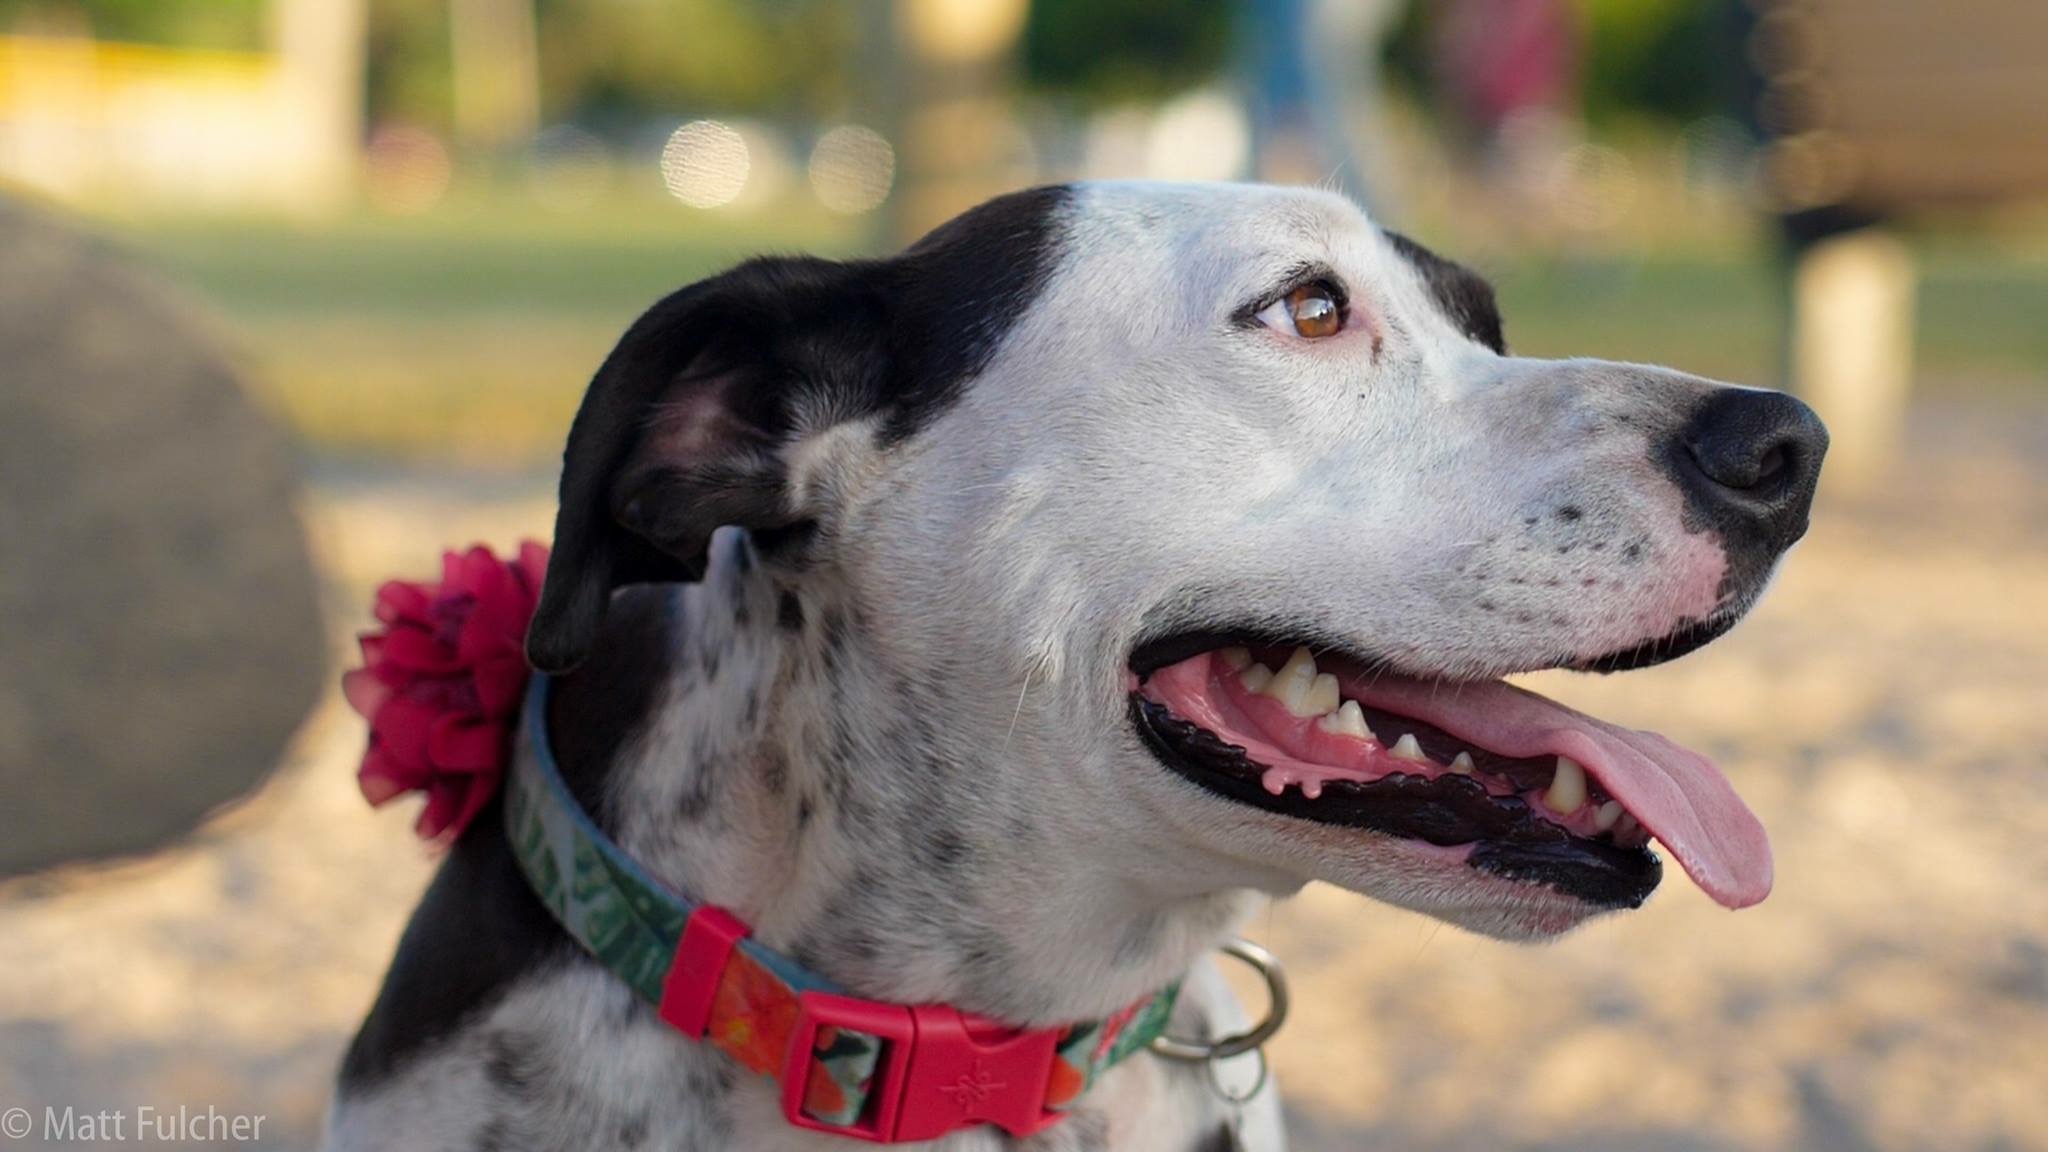 When you need a Smile, go to the Vero Beach Dog Park .